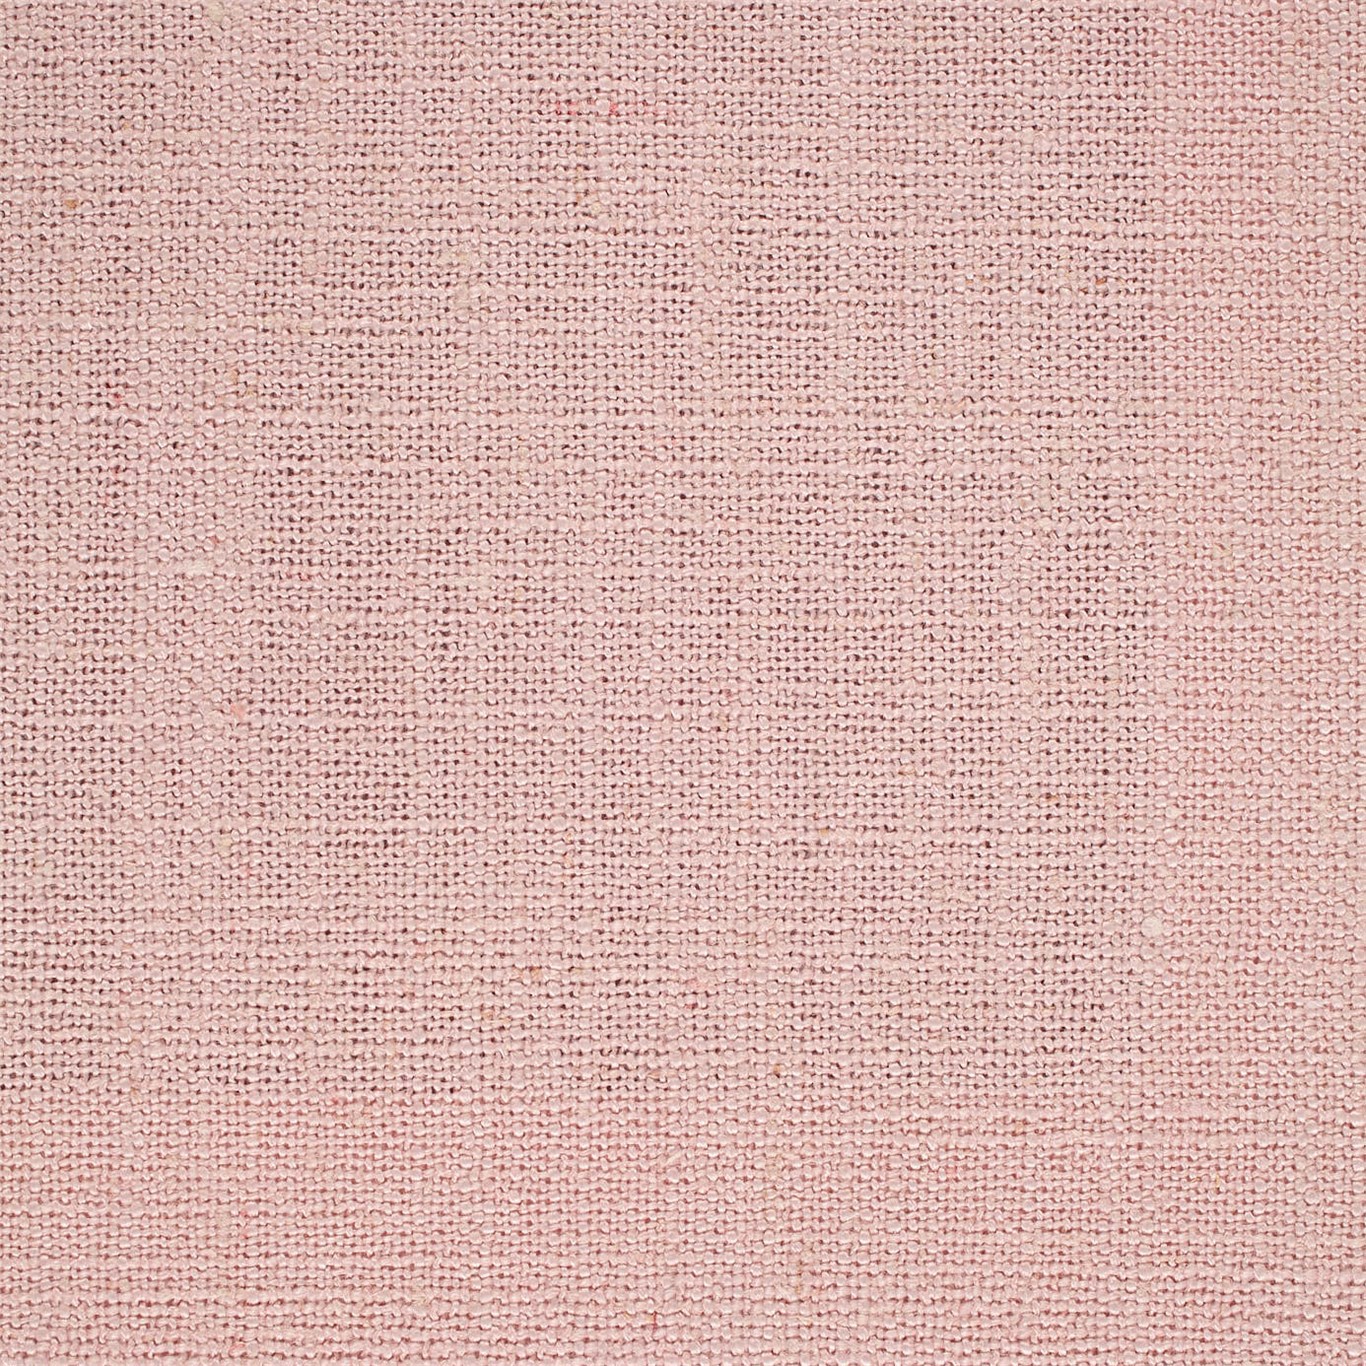 Lagom Powder Fabric by SAN